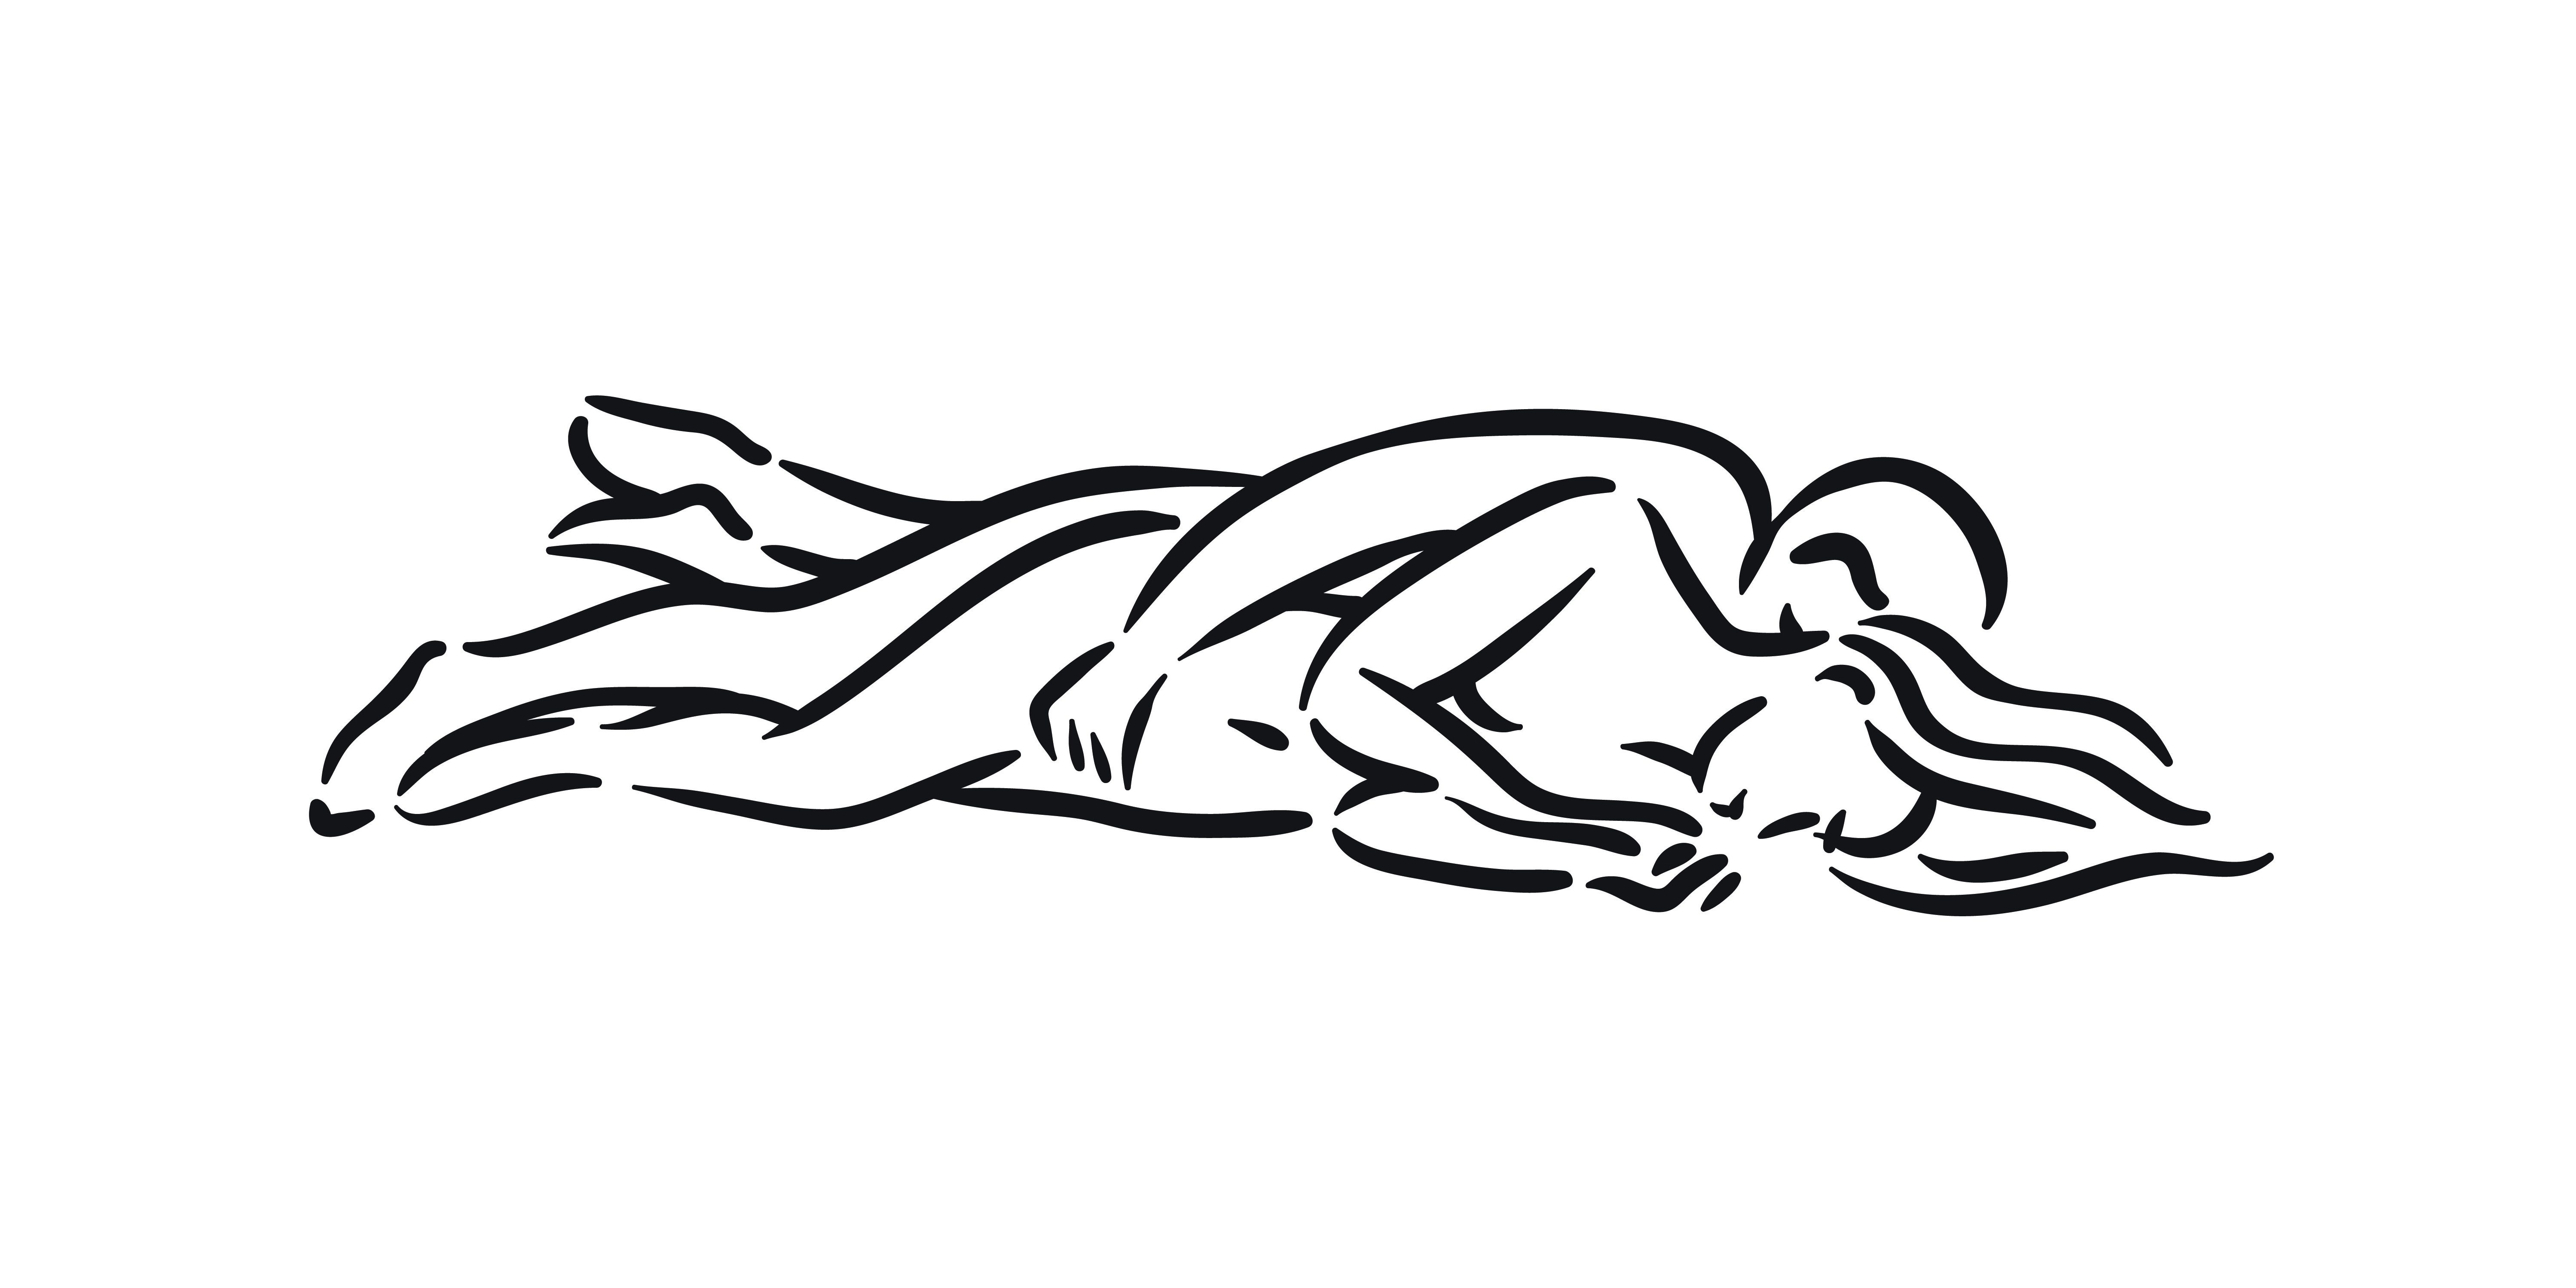 Sex position icon: изображения без лицензионных платежей